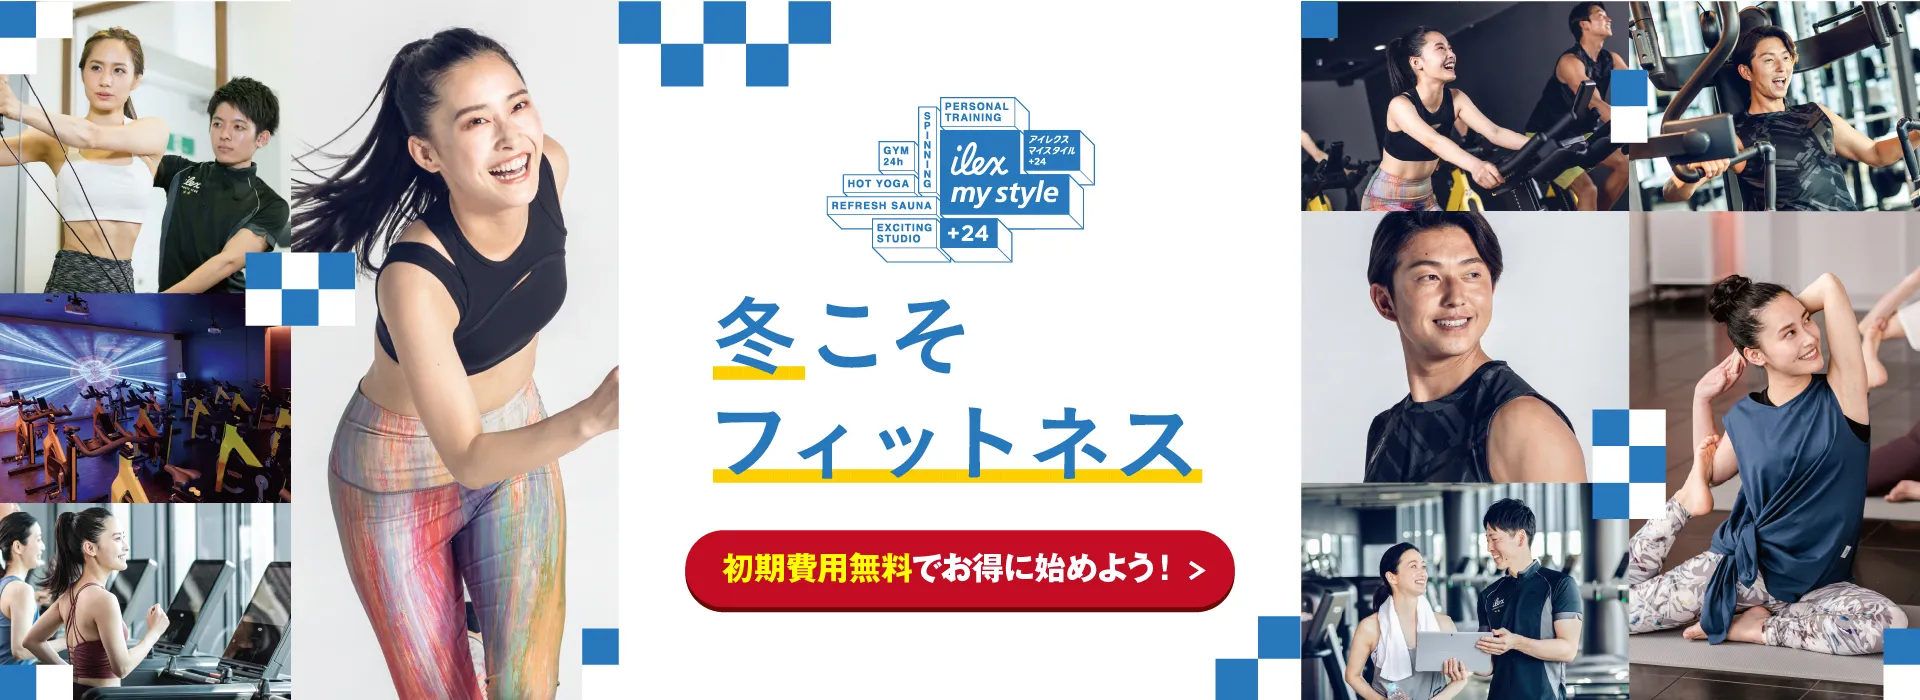 マイスタイル+24 豊田 OPENキャンペーン